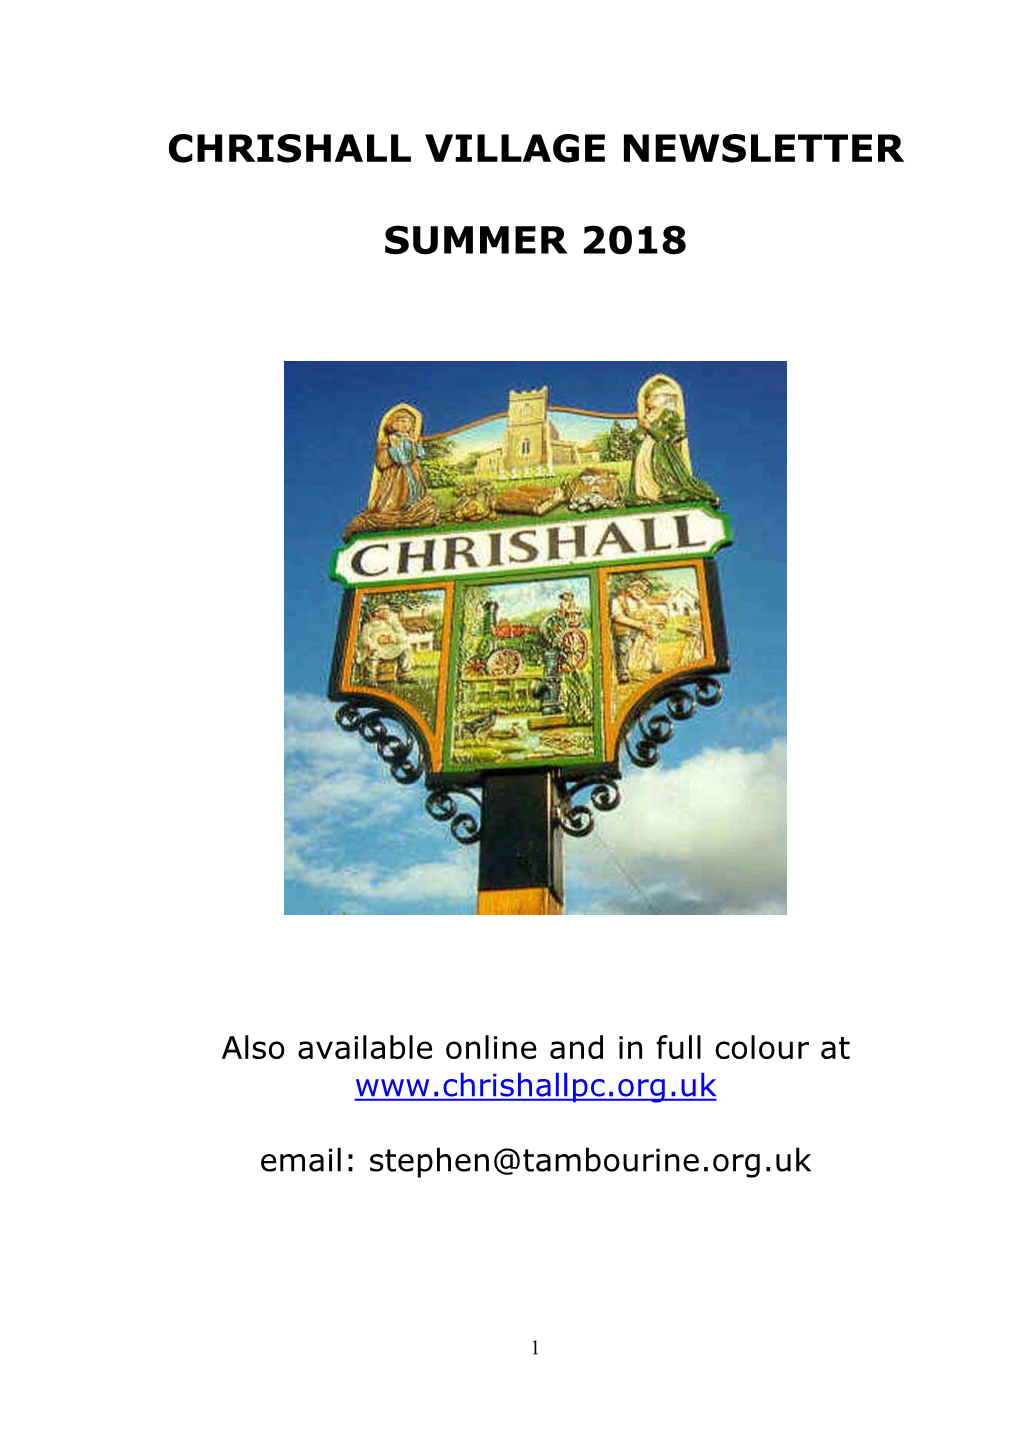 Chrishall Village Newsletter Summer 2018